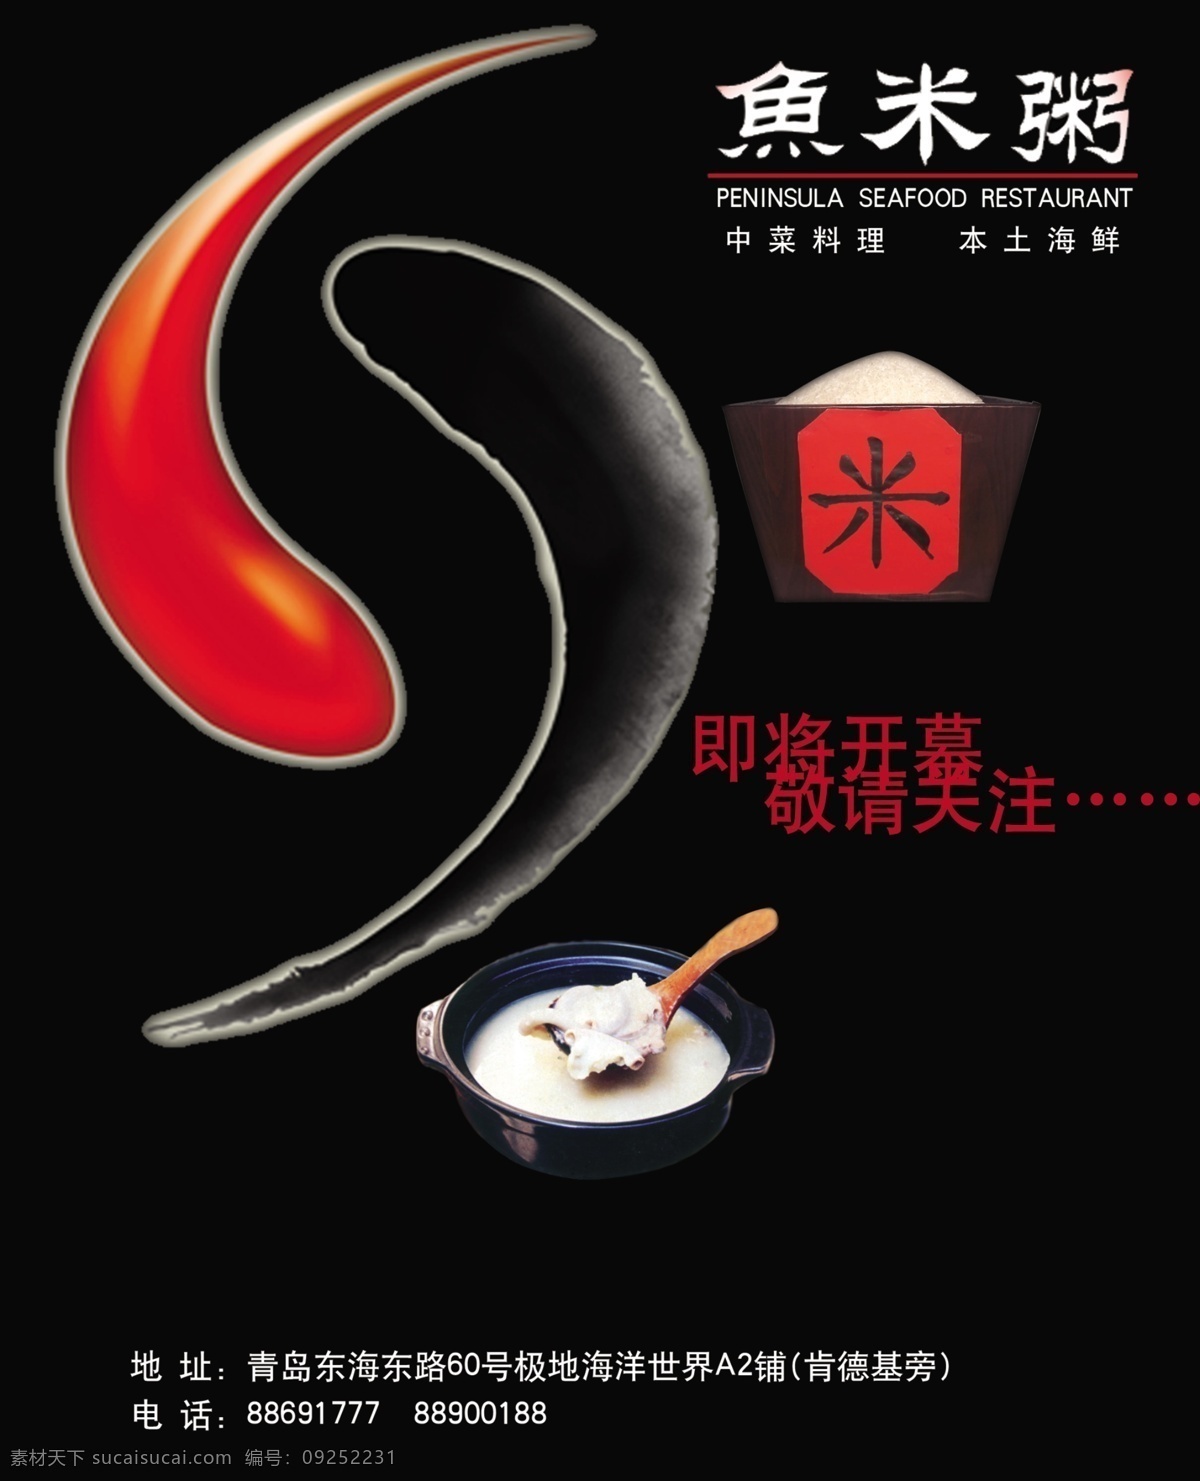 鱼 米粥 开业 宣传海报 免费 黑色 即将开幕 开业宣传 粥 鱼米粥 海报 宣传单 彩页 dm